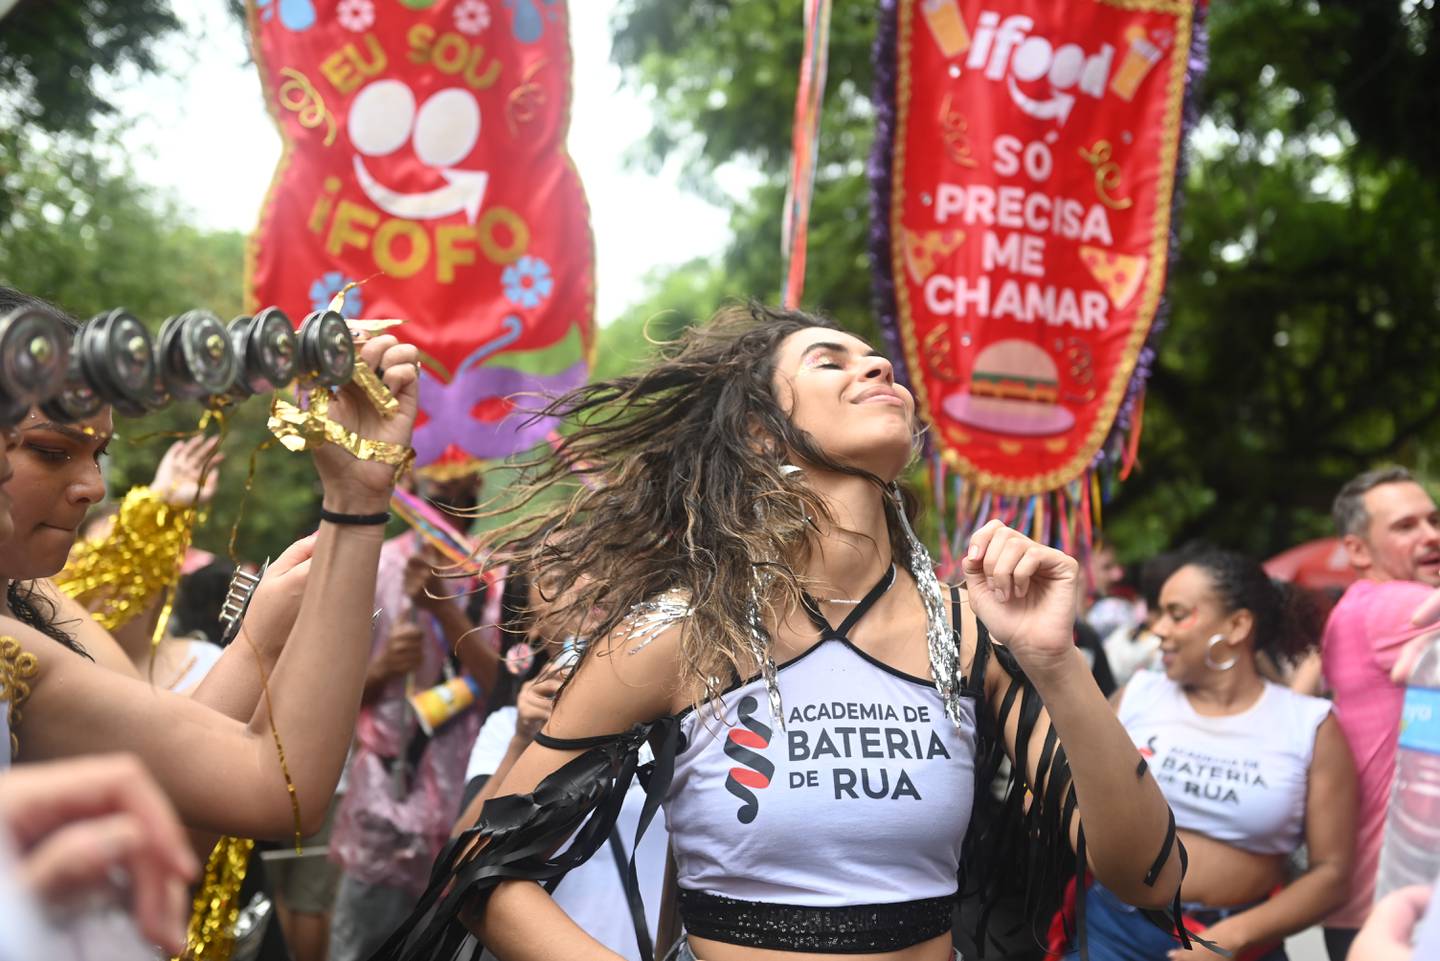 Millones de brasileños salen a las calles a celebrar el Carnaval. Foto: iFood.